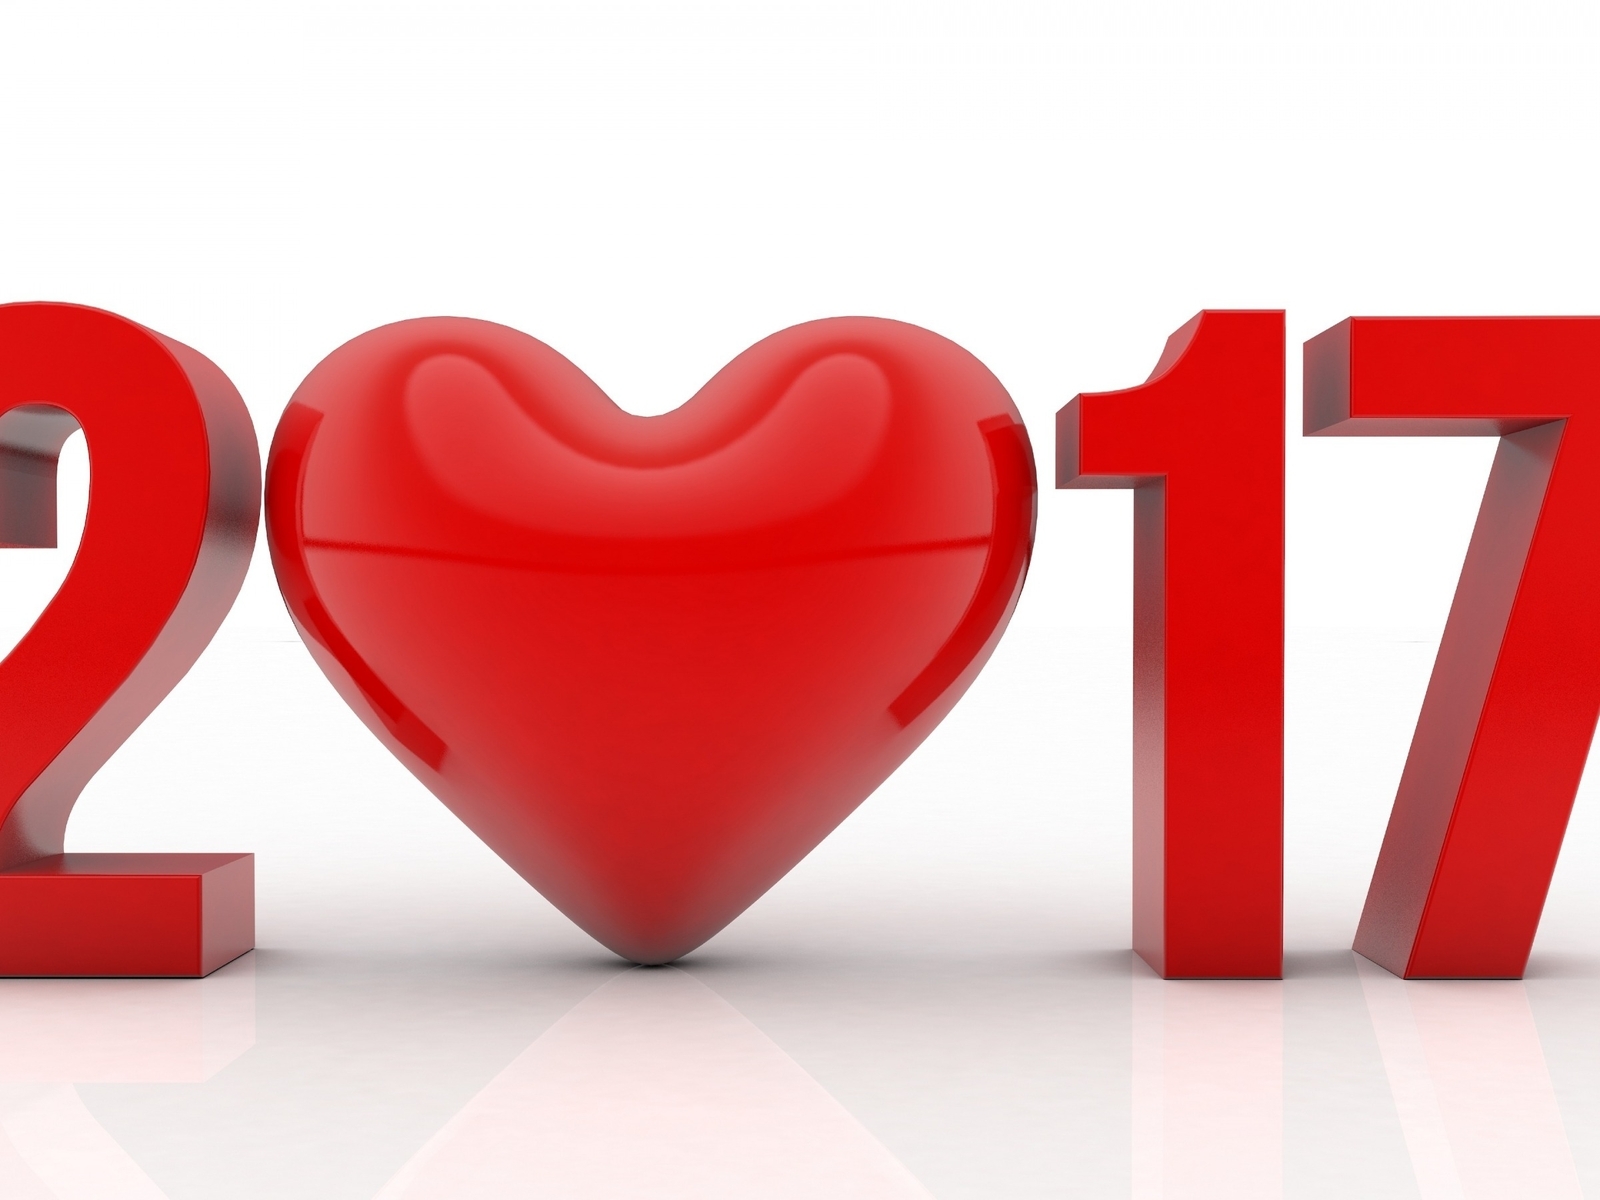 Картинка: Новый год, 2017, дата, сердце, красный, цвет, белый фон, тень